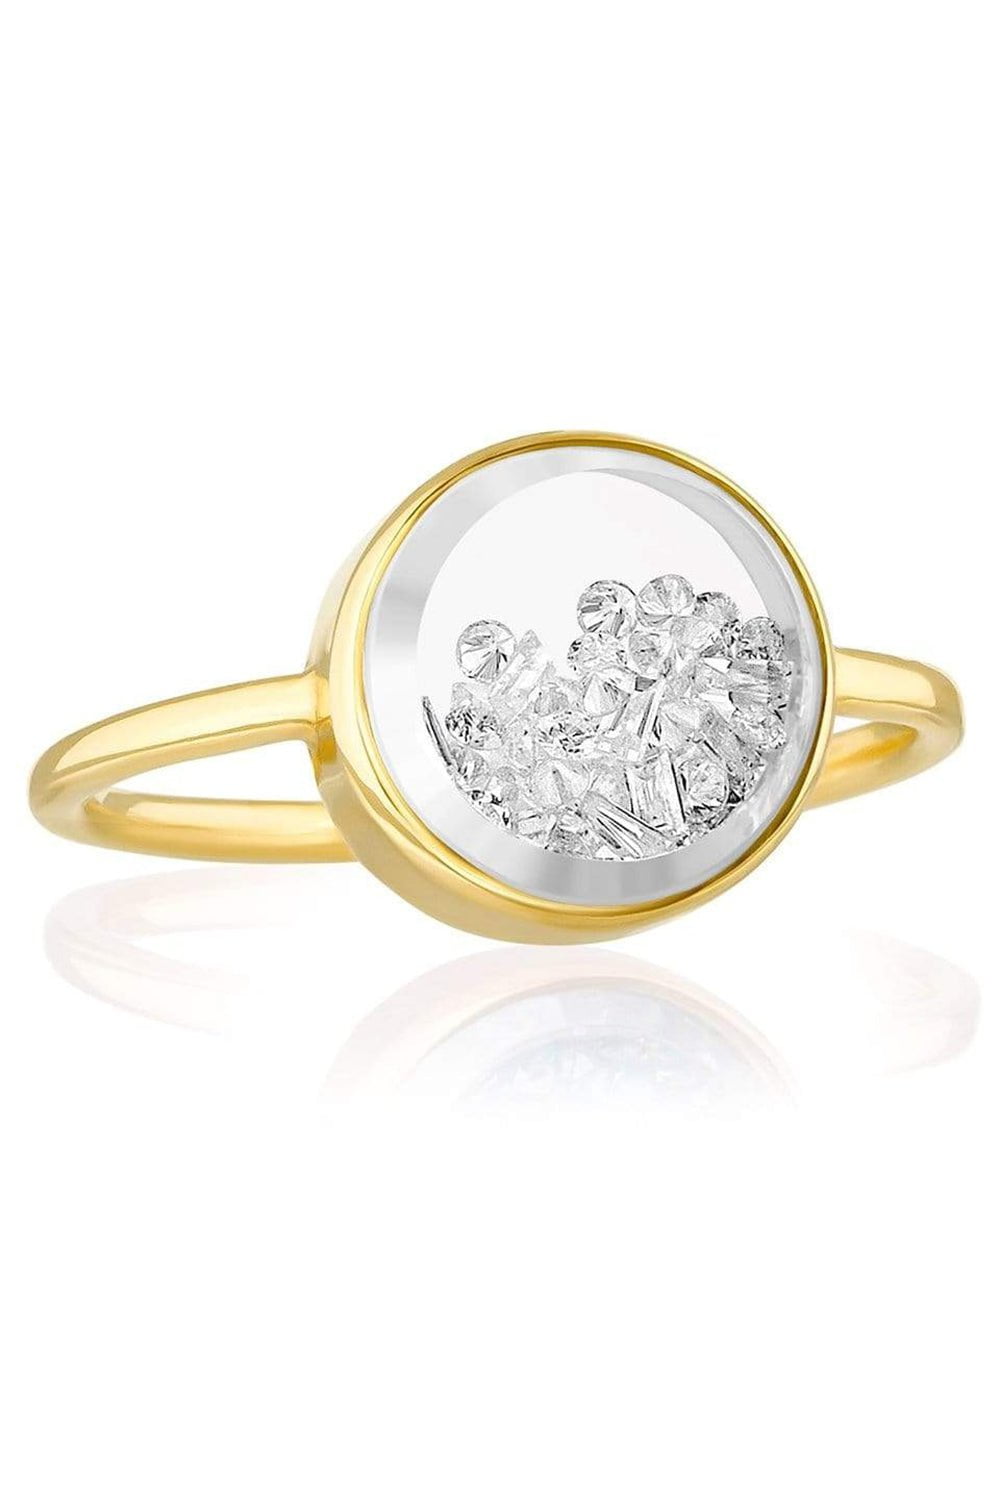 MORITZ GLIK-Round Core Baby Diamond Shaker Ring-